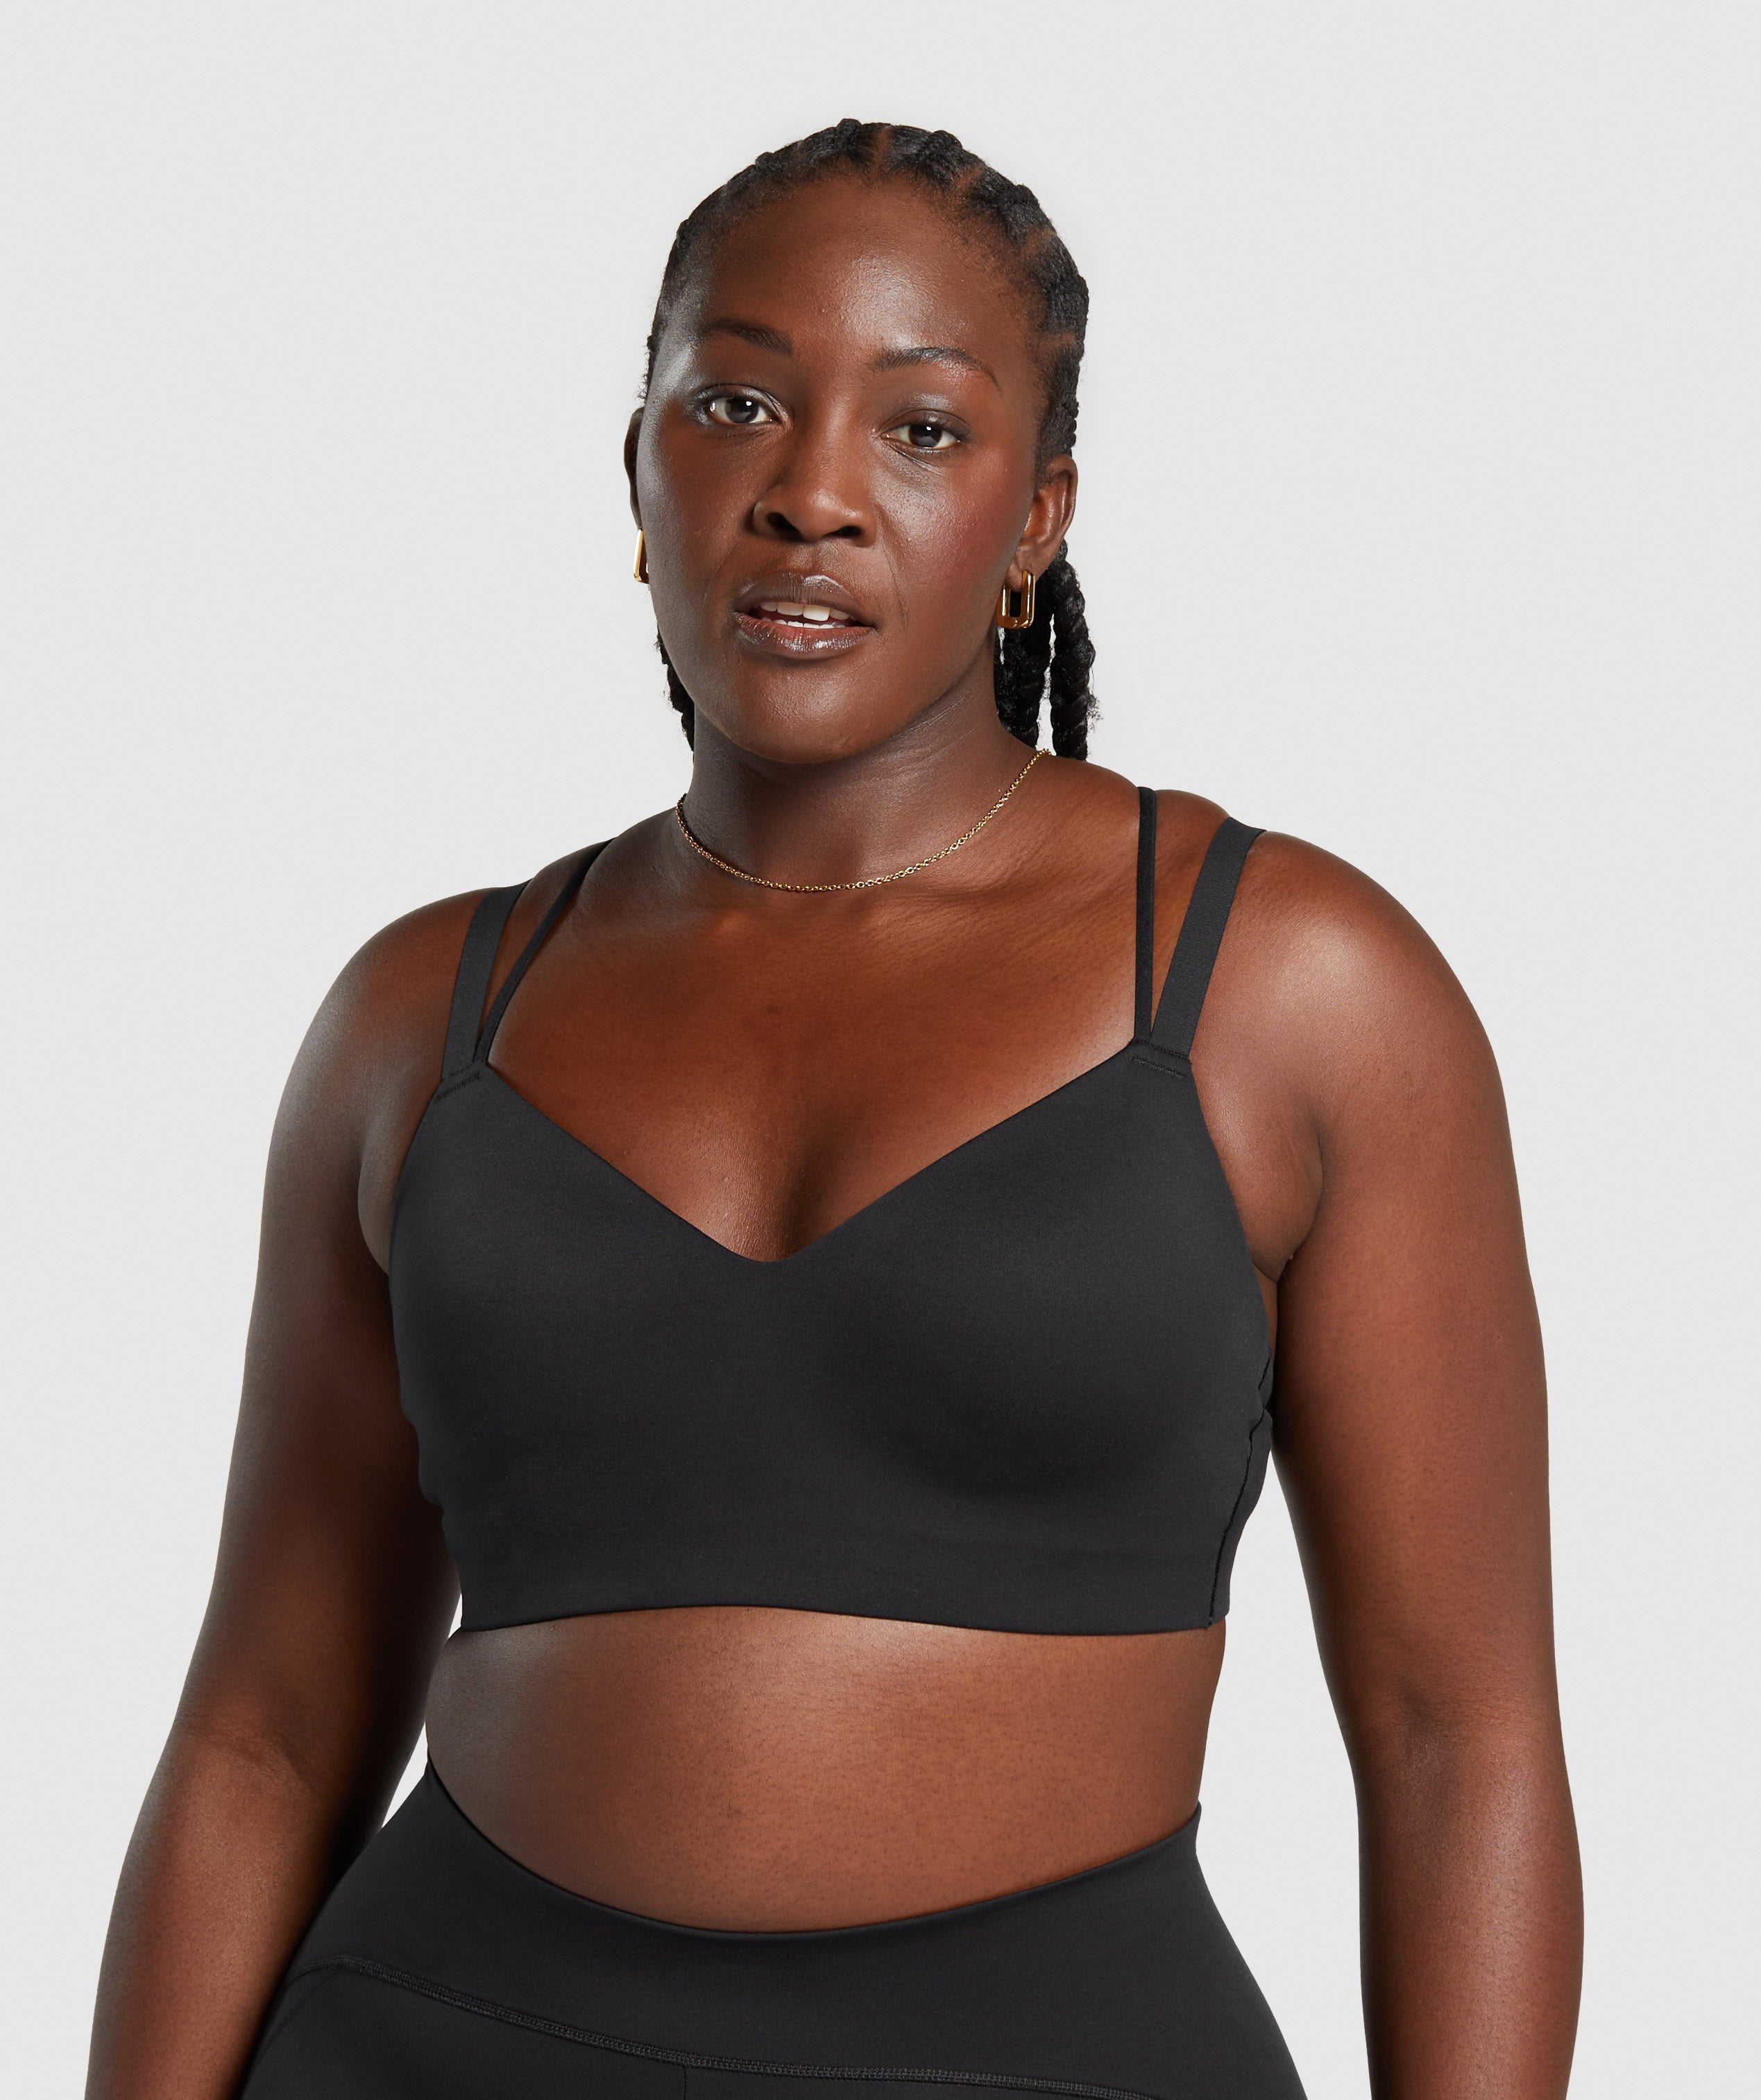 ASOS Women's Black Strappy Back Workout Sports Bra Size 6